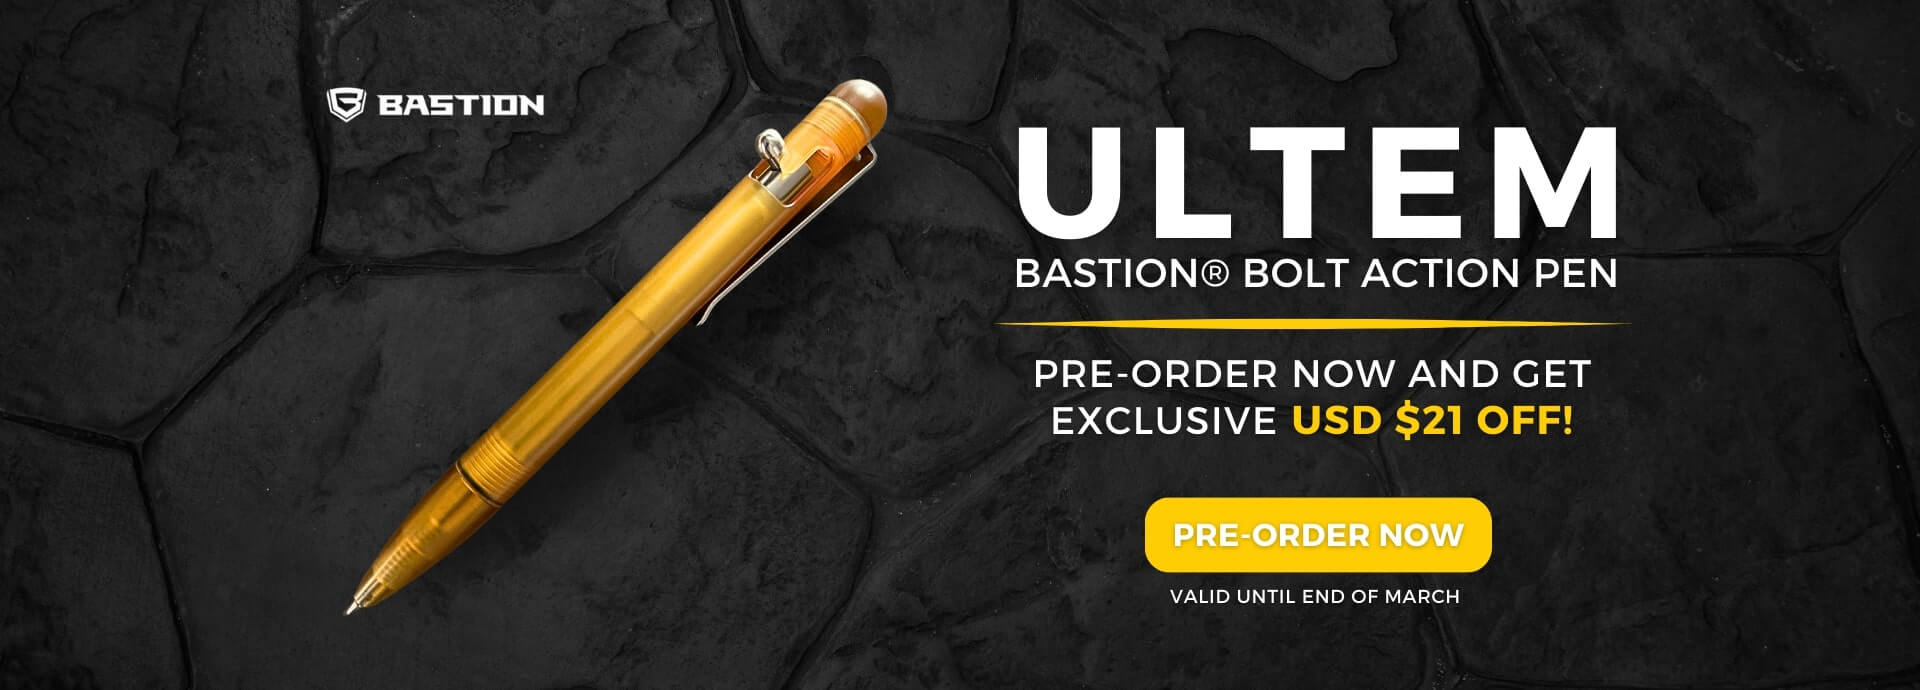 Ultem Bastion Bolt Action Pen Banner